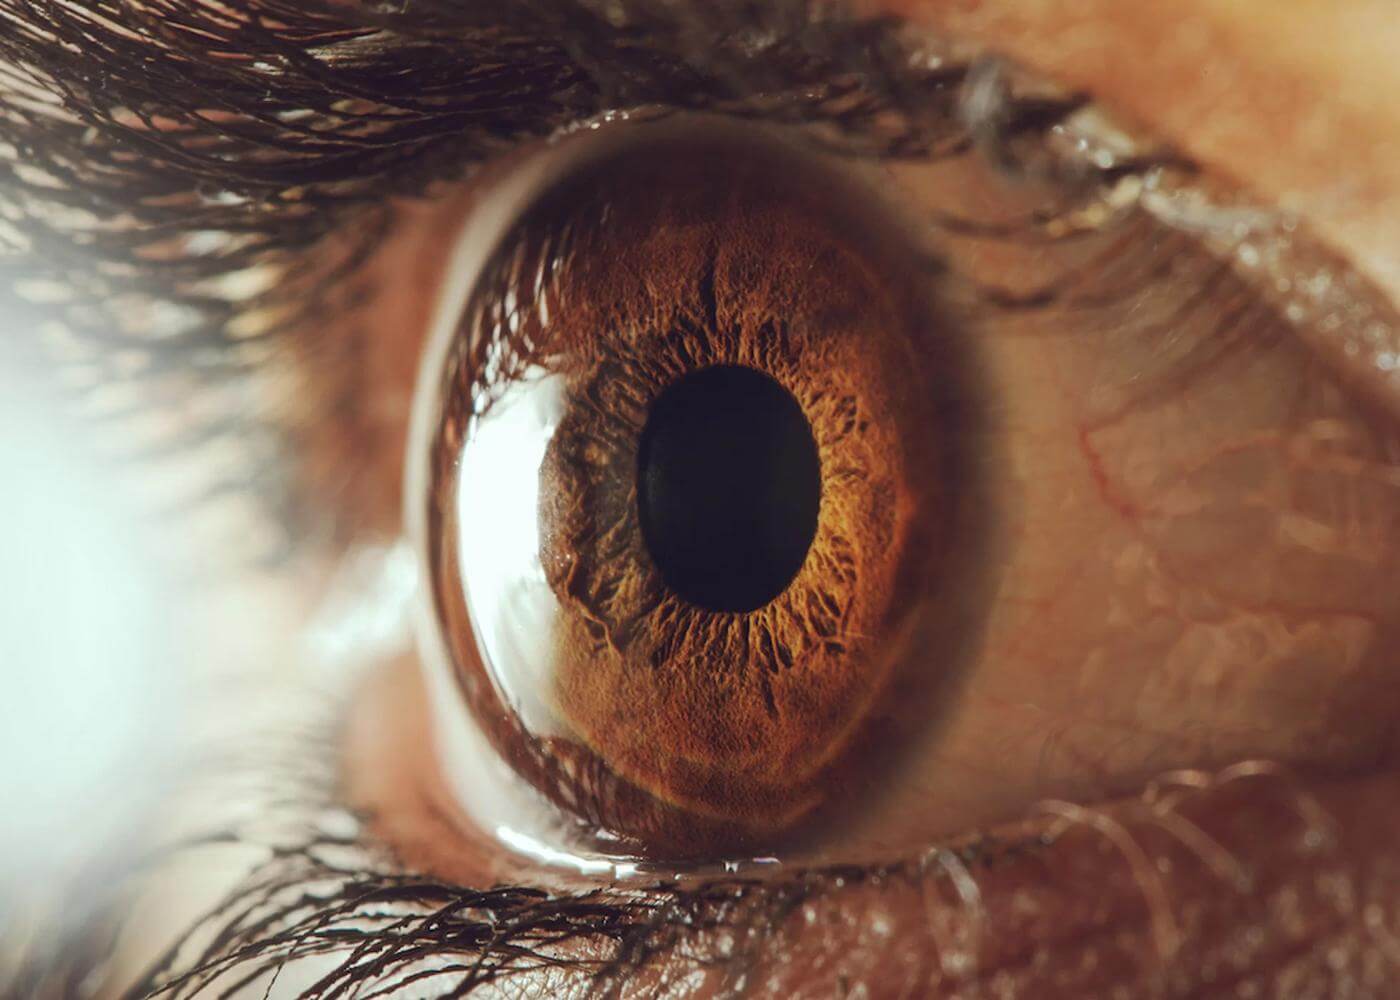 Mata manusia menyerupai kamera kuno. Kornea mata dan lensa memfokuskan cahaya ke retina, jaringan dengan protein peka cahaya yang dapat memproses warna hitam, putih dan warna lain yang berbeda